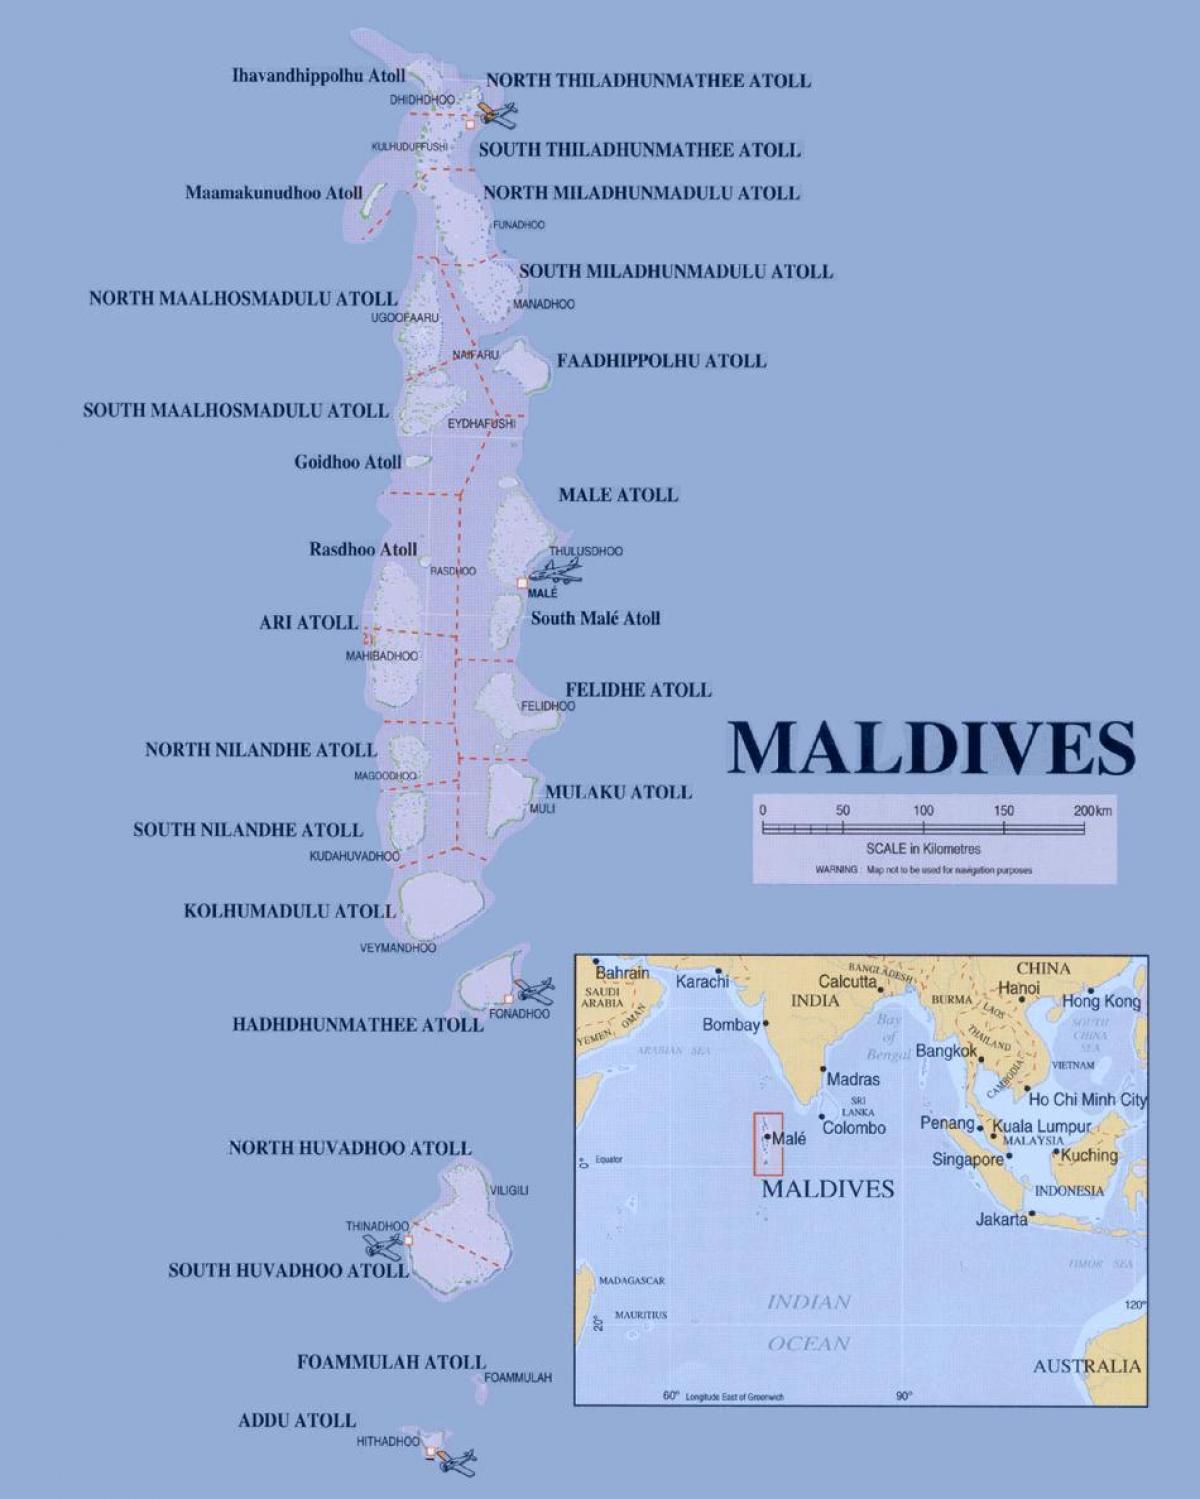 کا نقشہ مالدیپ سیاسی